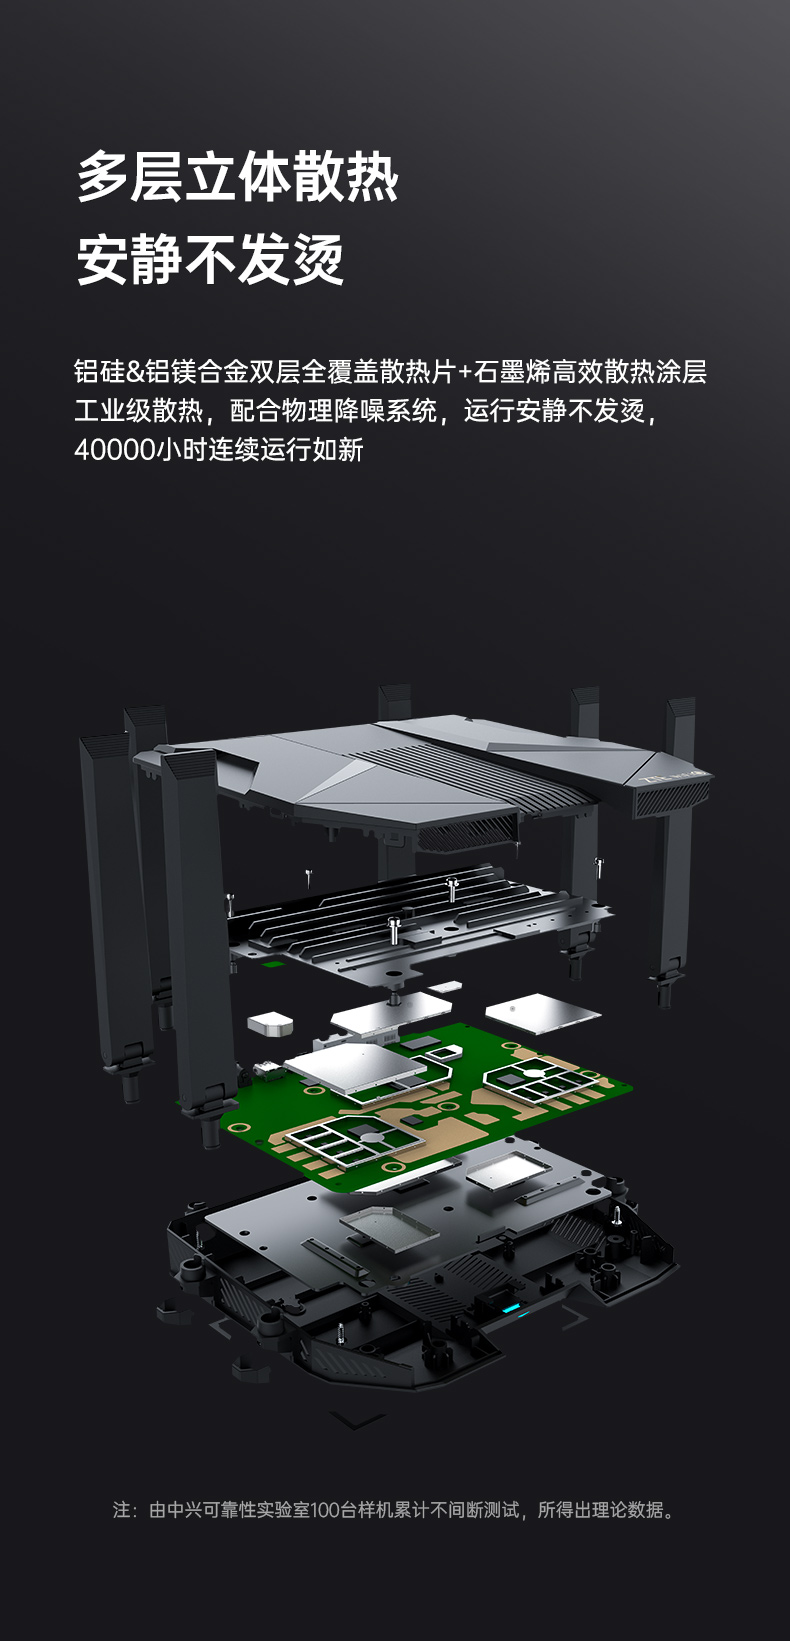 中兴ZTE【骐骥系列】AX5400Pro双频千兆 自研12核主芯片 2.5G端口无线路由器 wifi6 电竞路由穿墙大覆盖